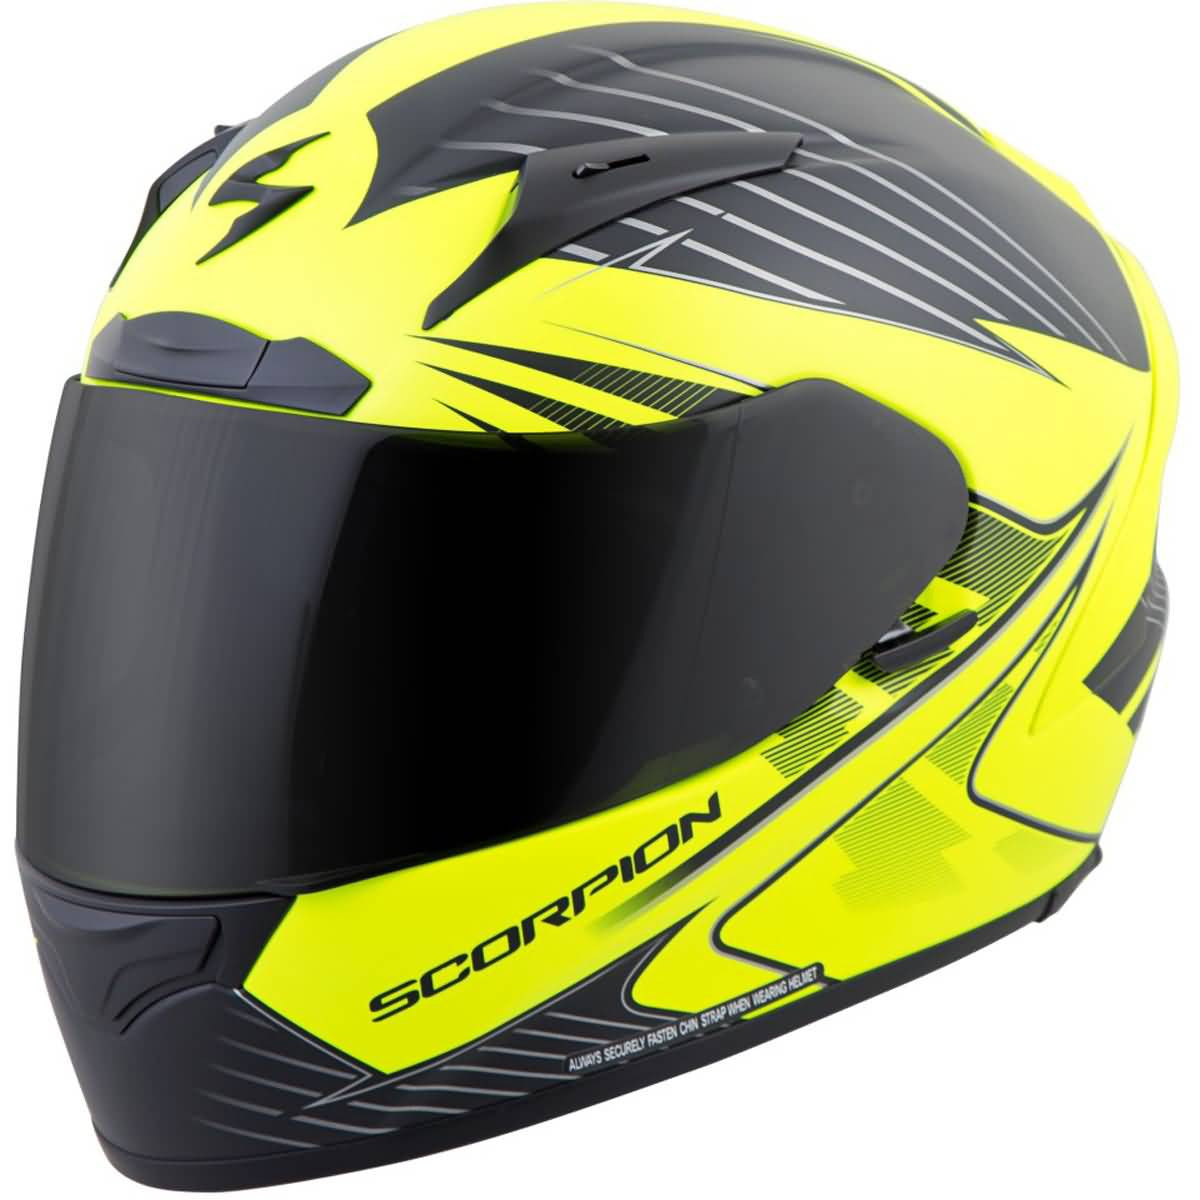 Scorpion EXO-R2000 Premium Race Helmets